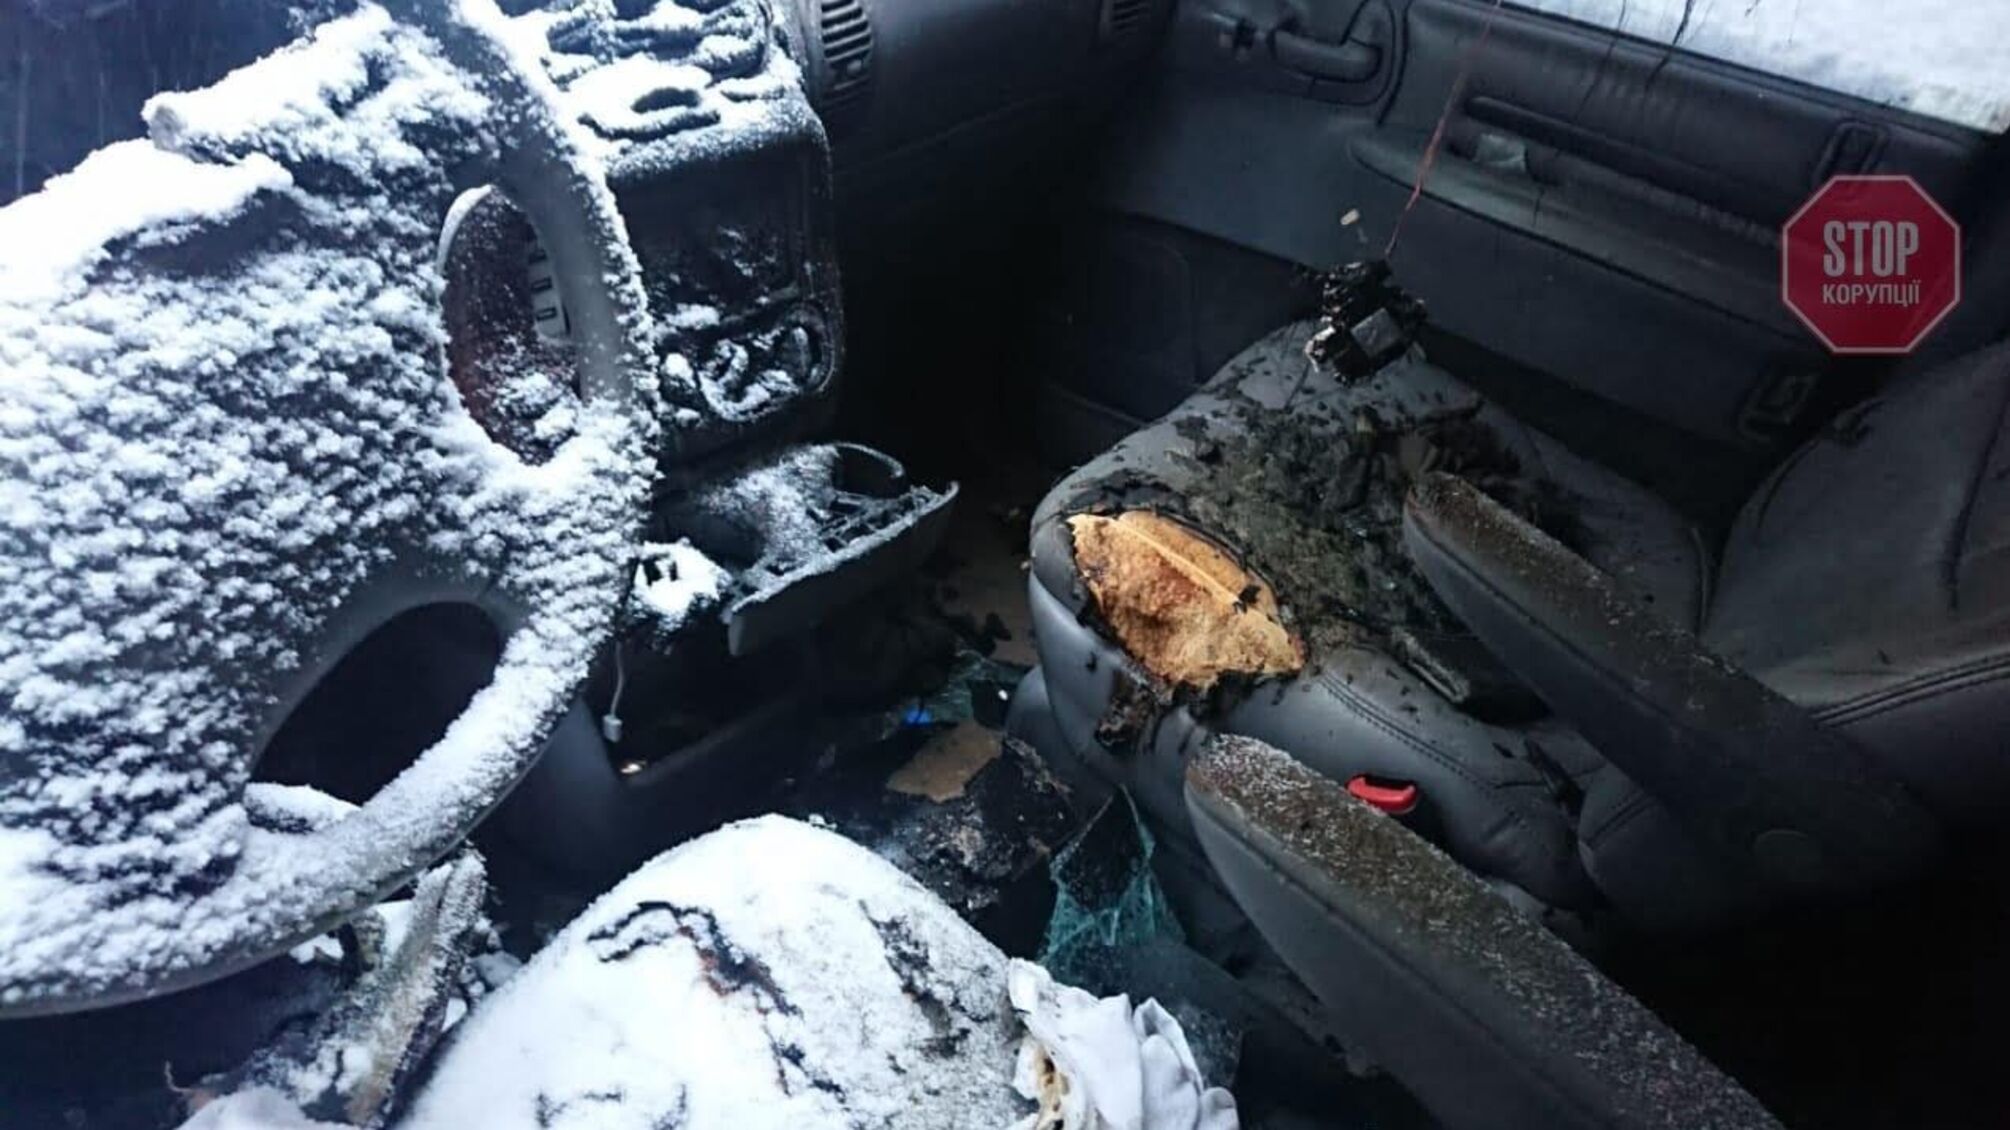 Підпал машини активіста в Києві: за пів року поліція не знайшла винних (фото)